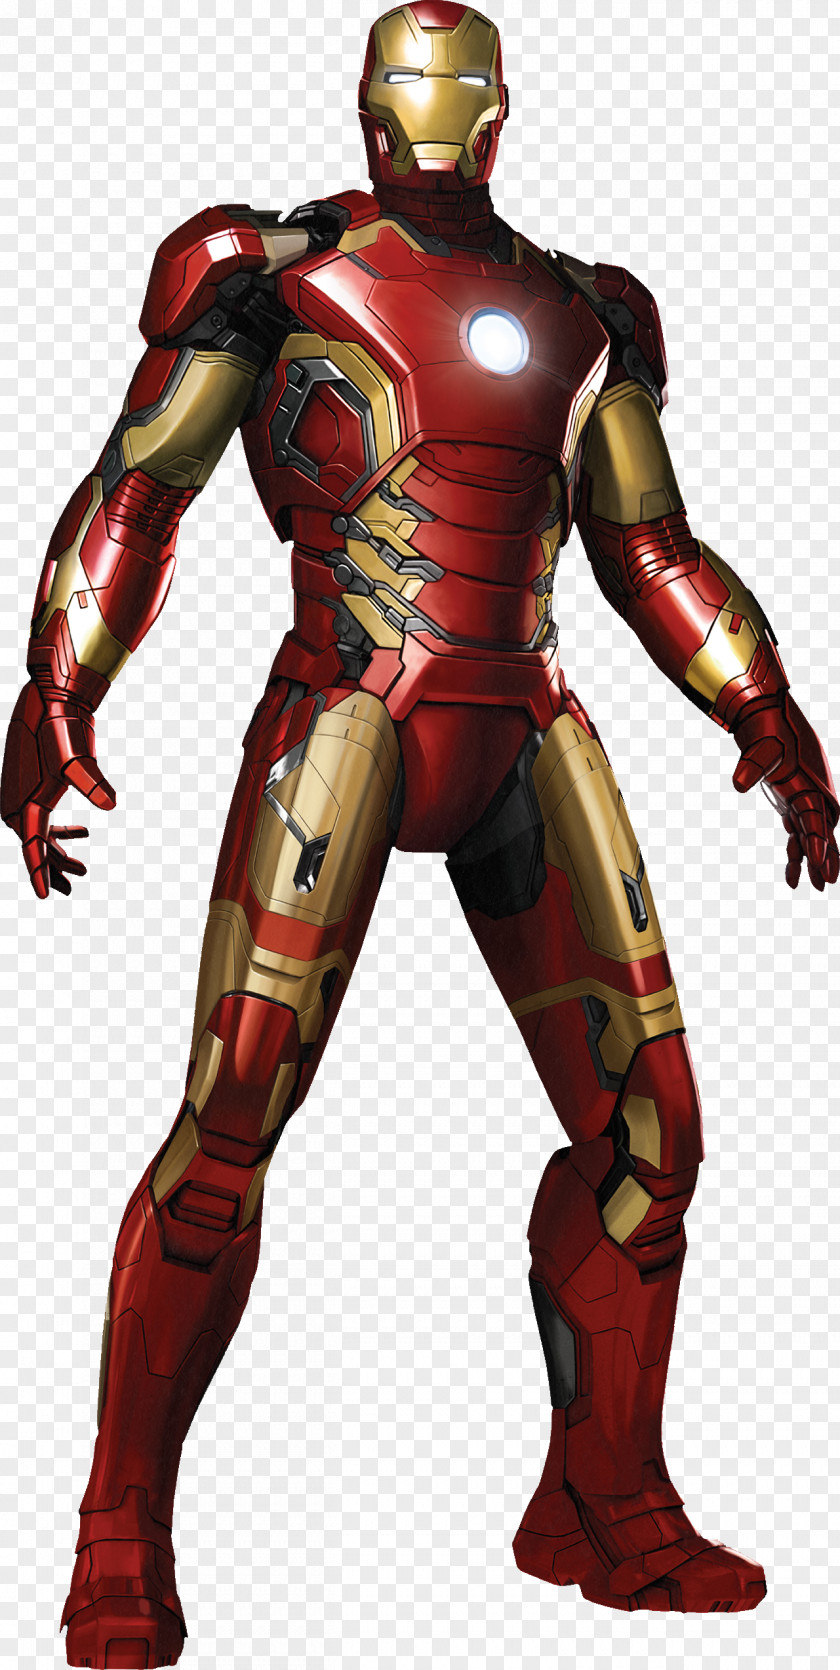 Ultron Iron Man's Armor Hulk PNG